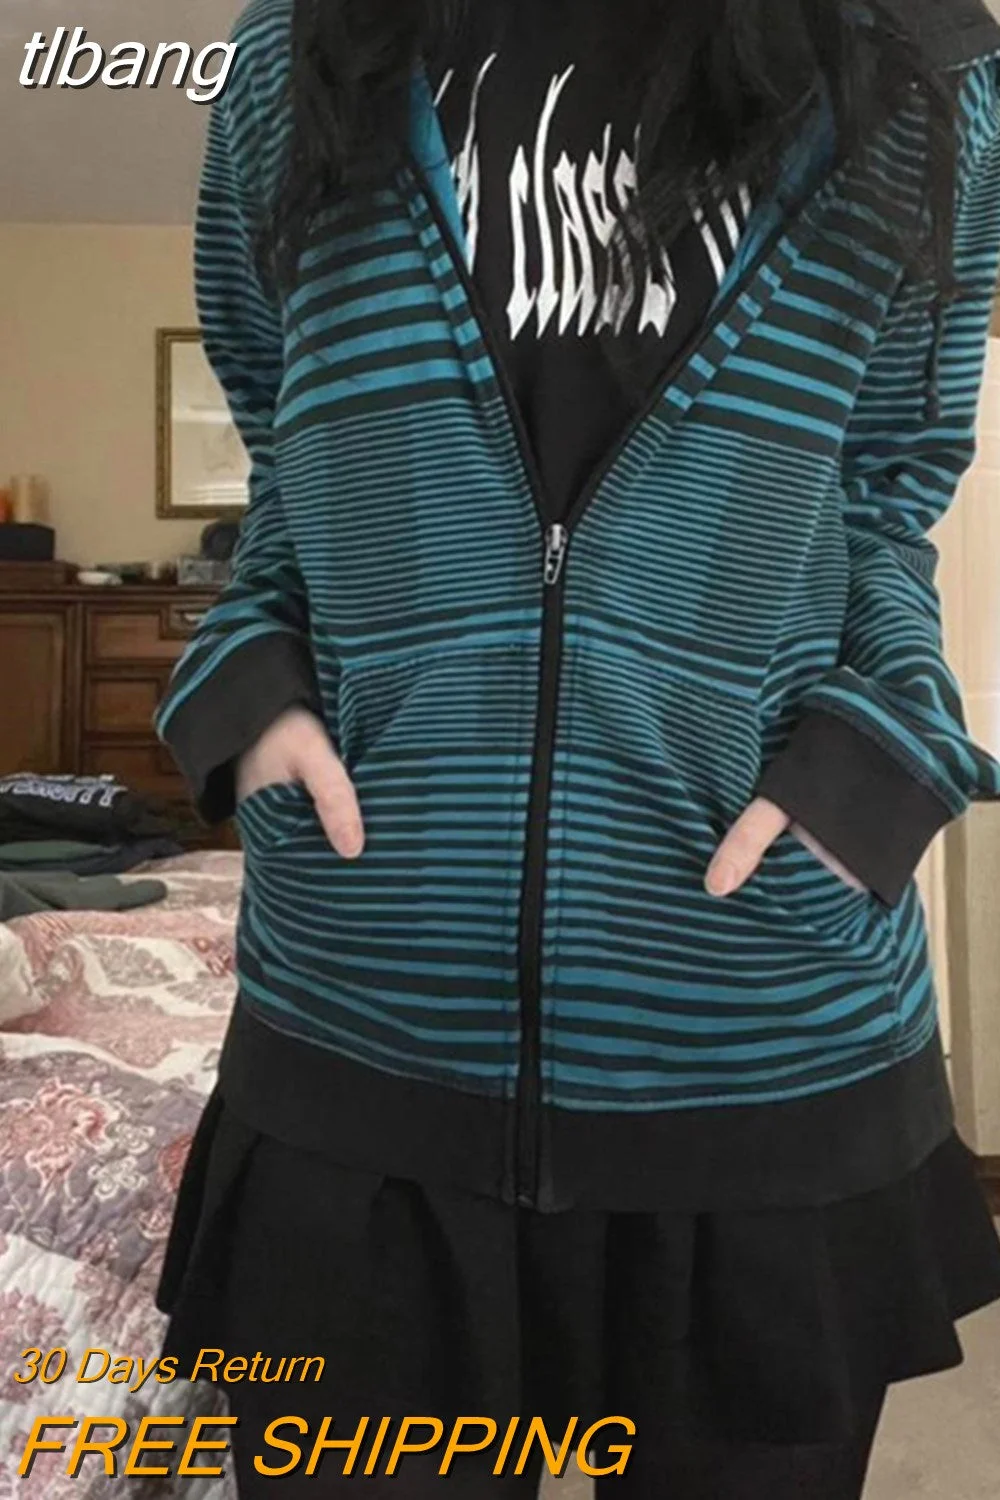 tlbang Vintage Stripe Print Sweatshirt y2k 2000s Aesthetic Women Zip Up Long Sleeve Tops Gothic Hoodie with Pockets Streetwear